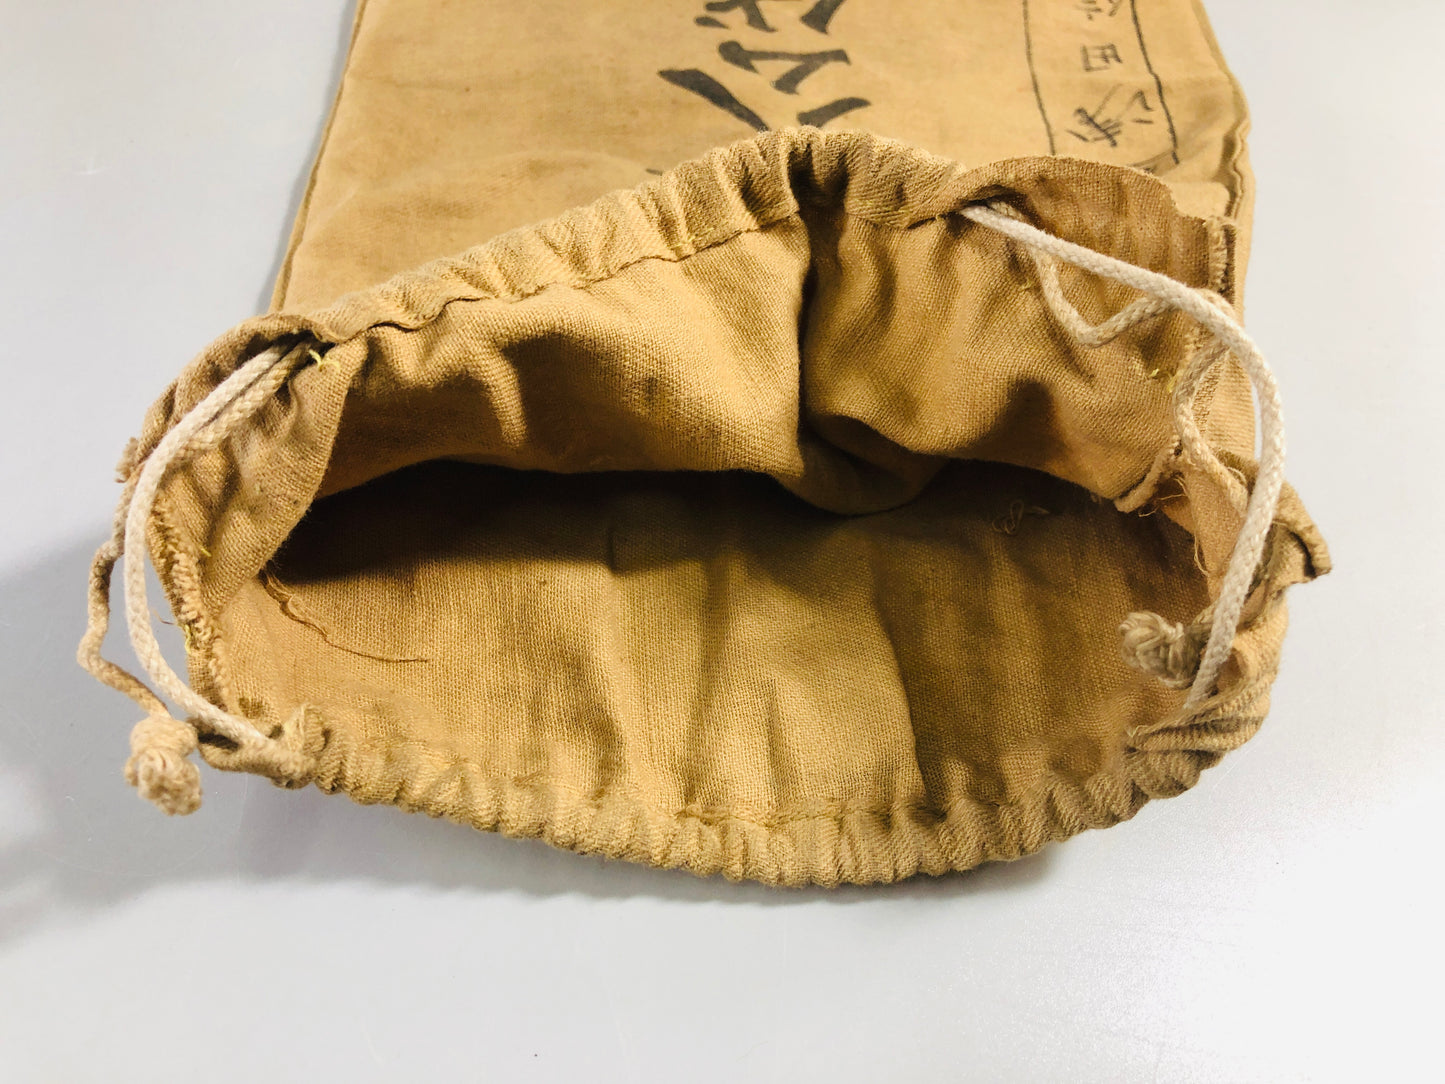 Y7072 Imperial Japan Army Houkoubukuro bag set of 3 military Japan WW2 vintage